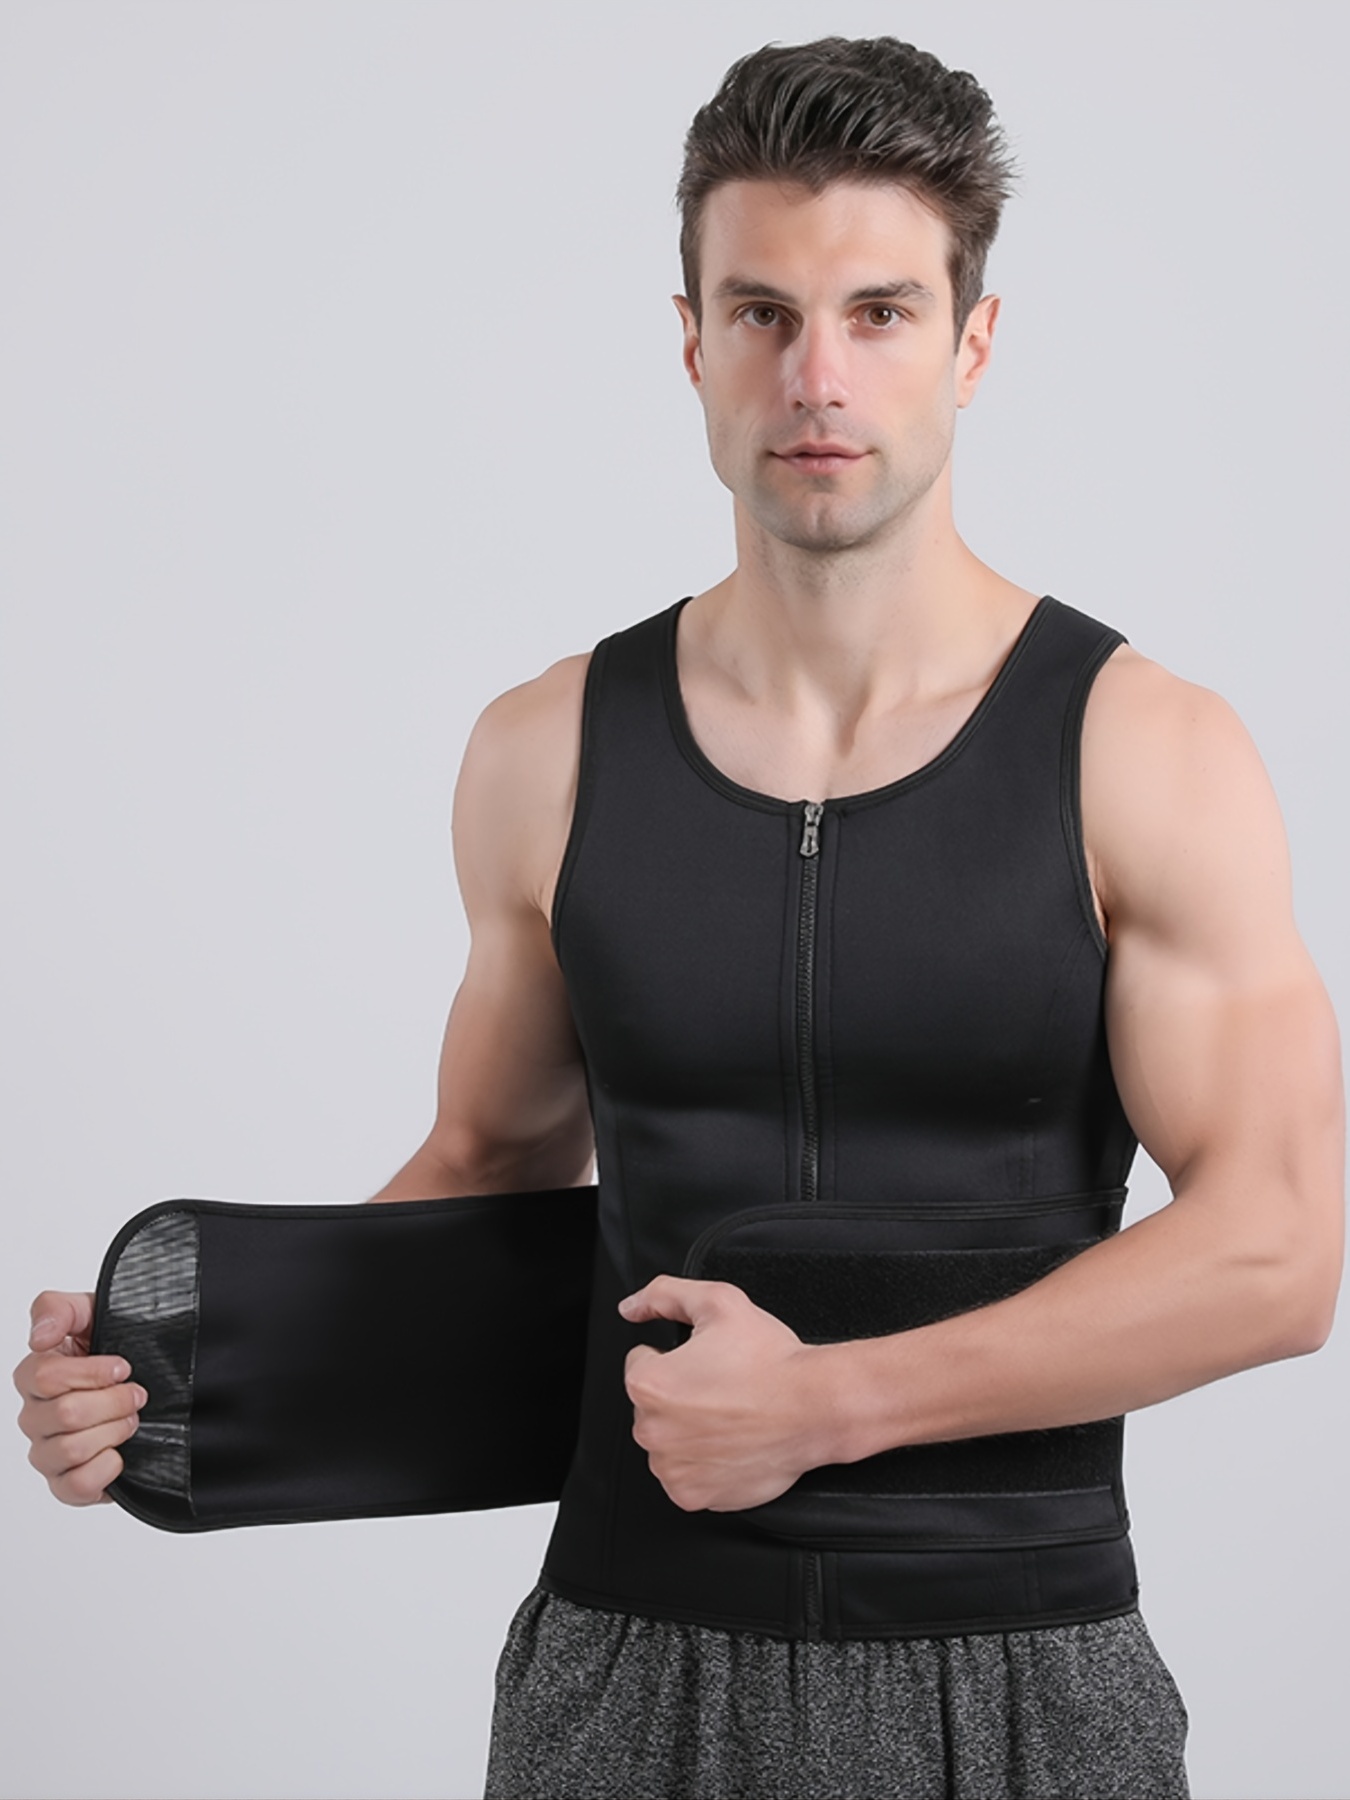 Men's Sauna Suit Shirt - Heat Trapping Sweat Compression Vest, Shapewear  Top, Gym Exercise Versatile Shaper Waist Trainer